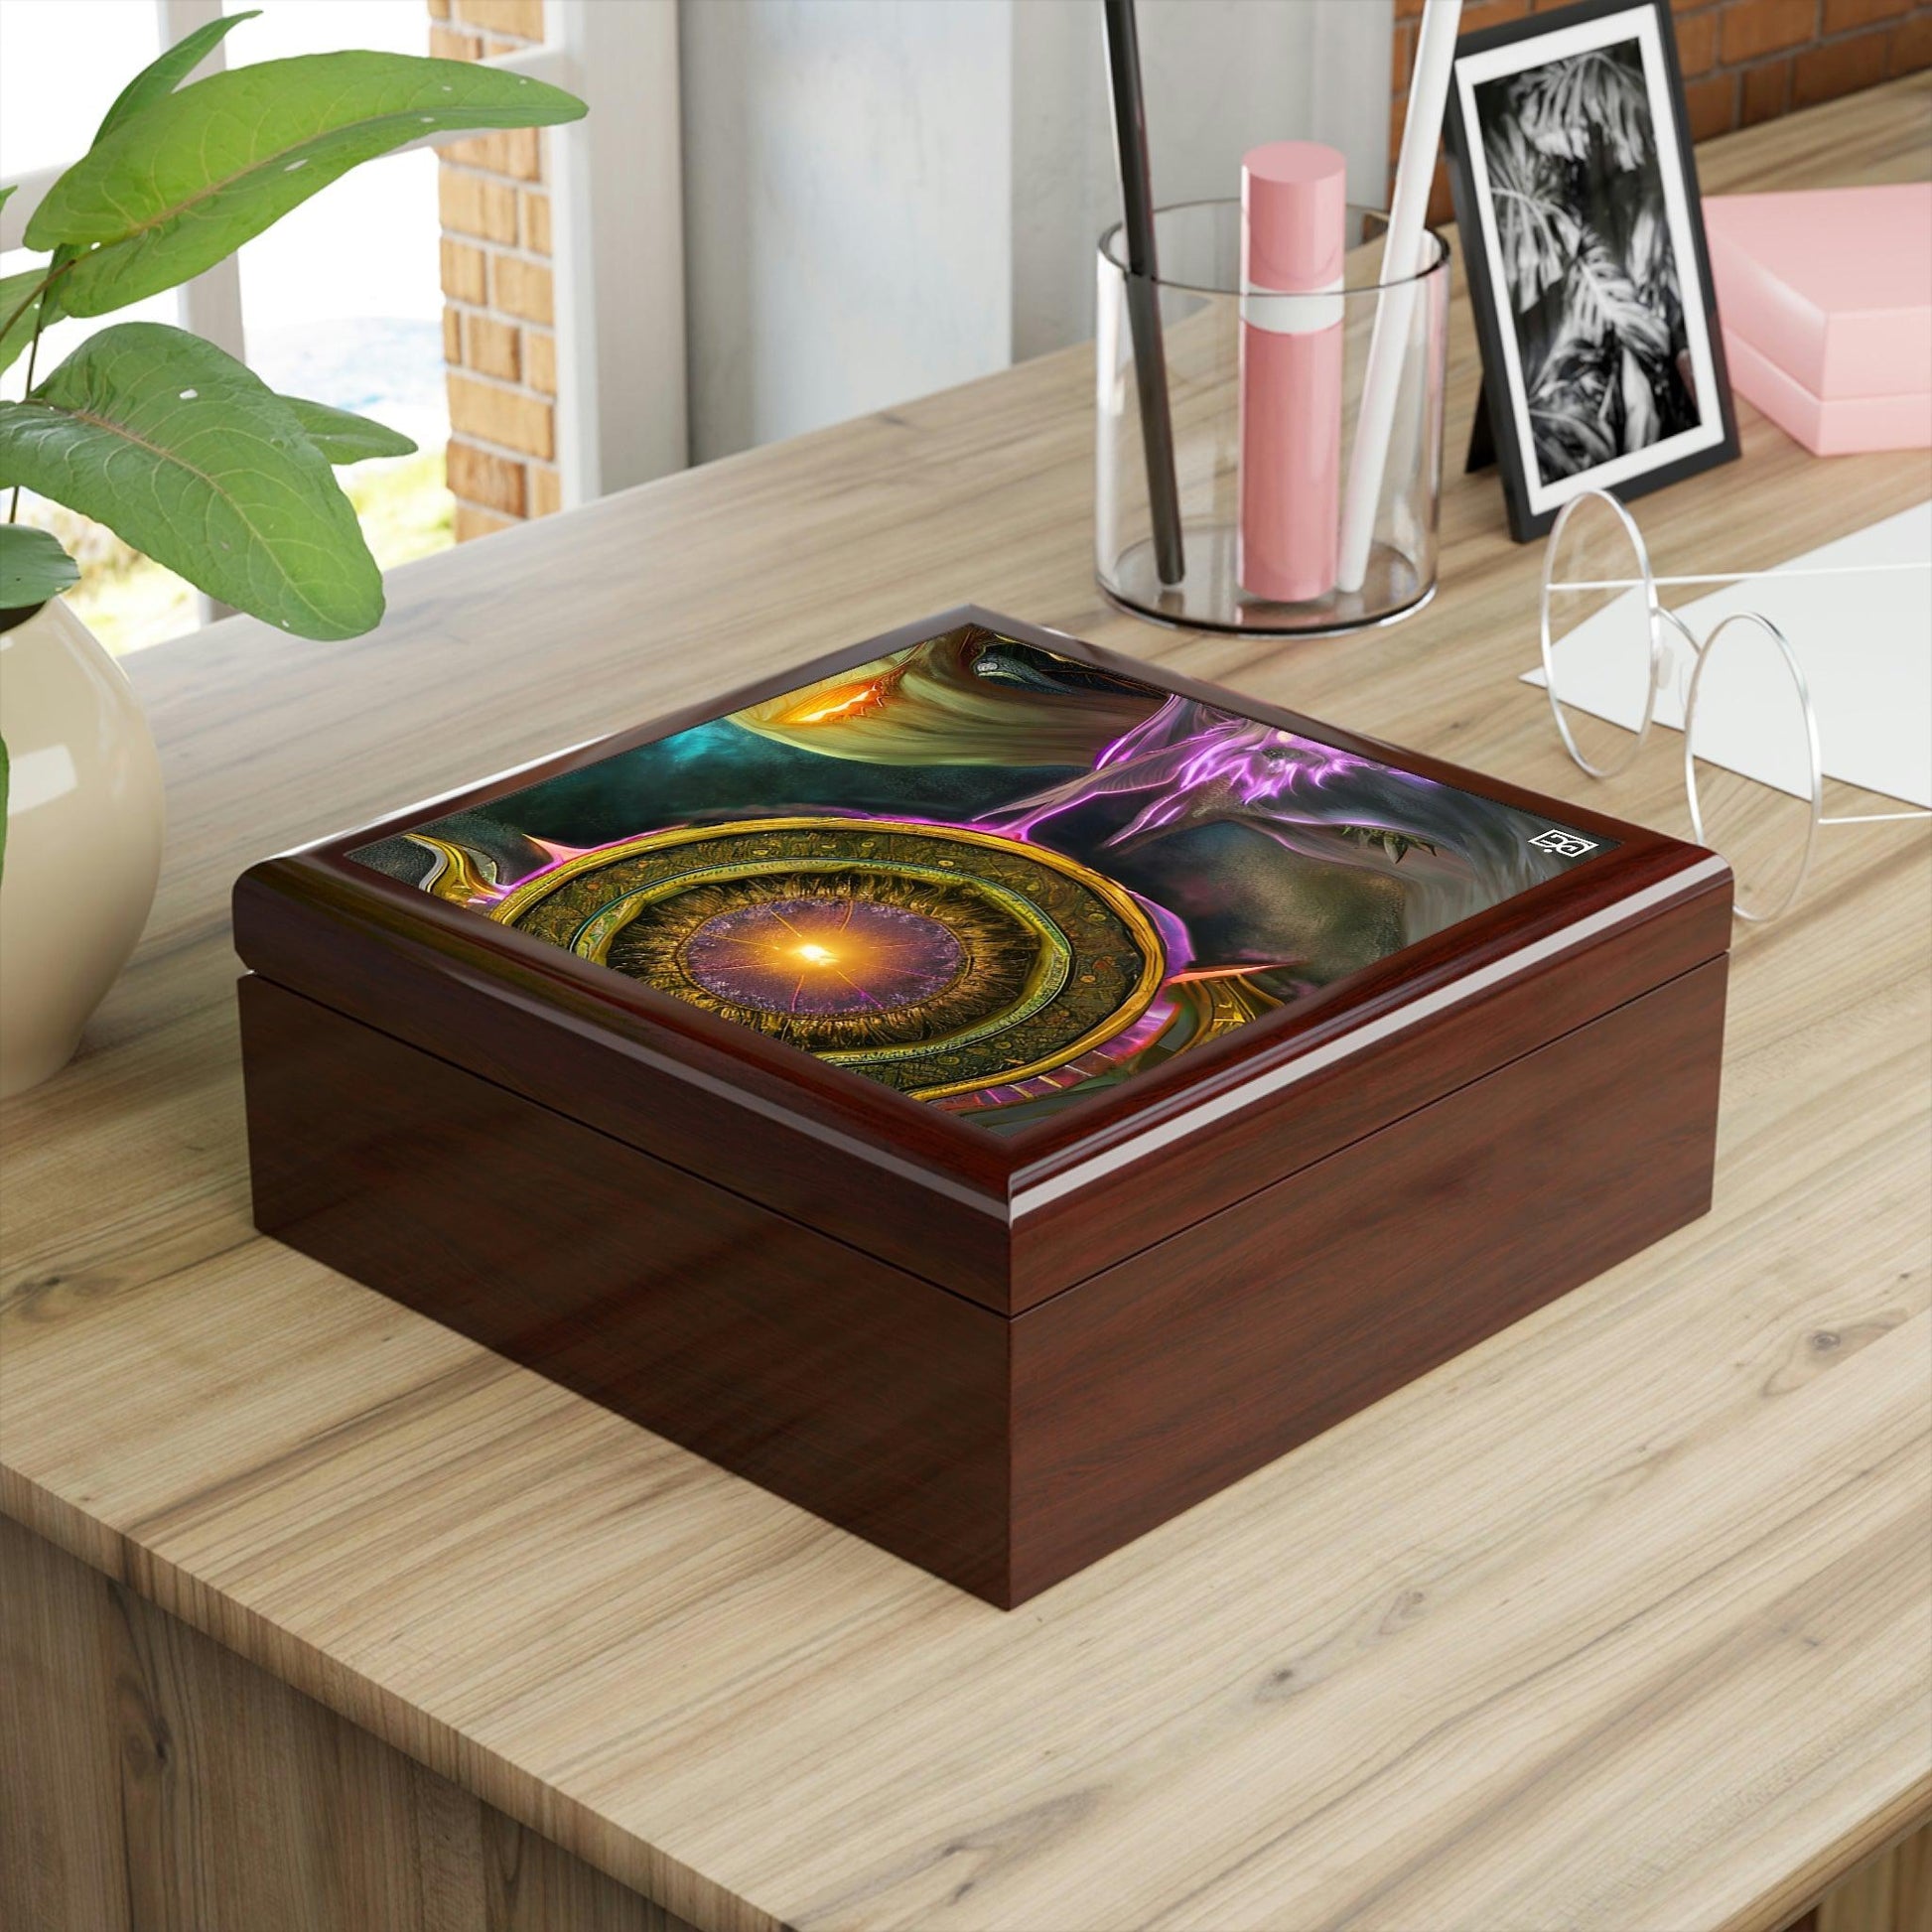 Planetary-Magic-Emas-Energy-Jewelry-Box-untuk-menyimpan-azimat-dan-cincin-anda